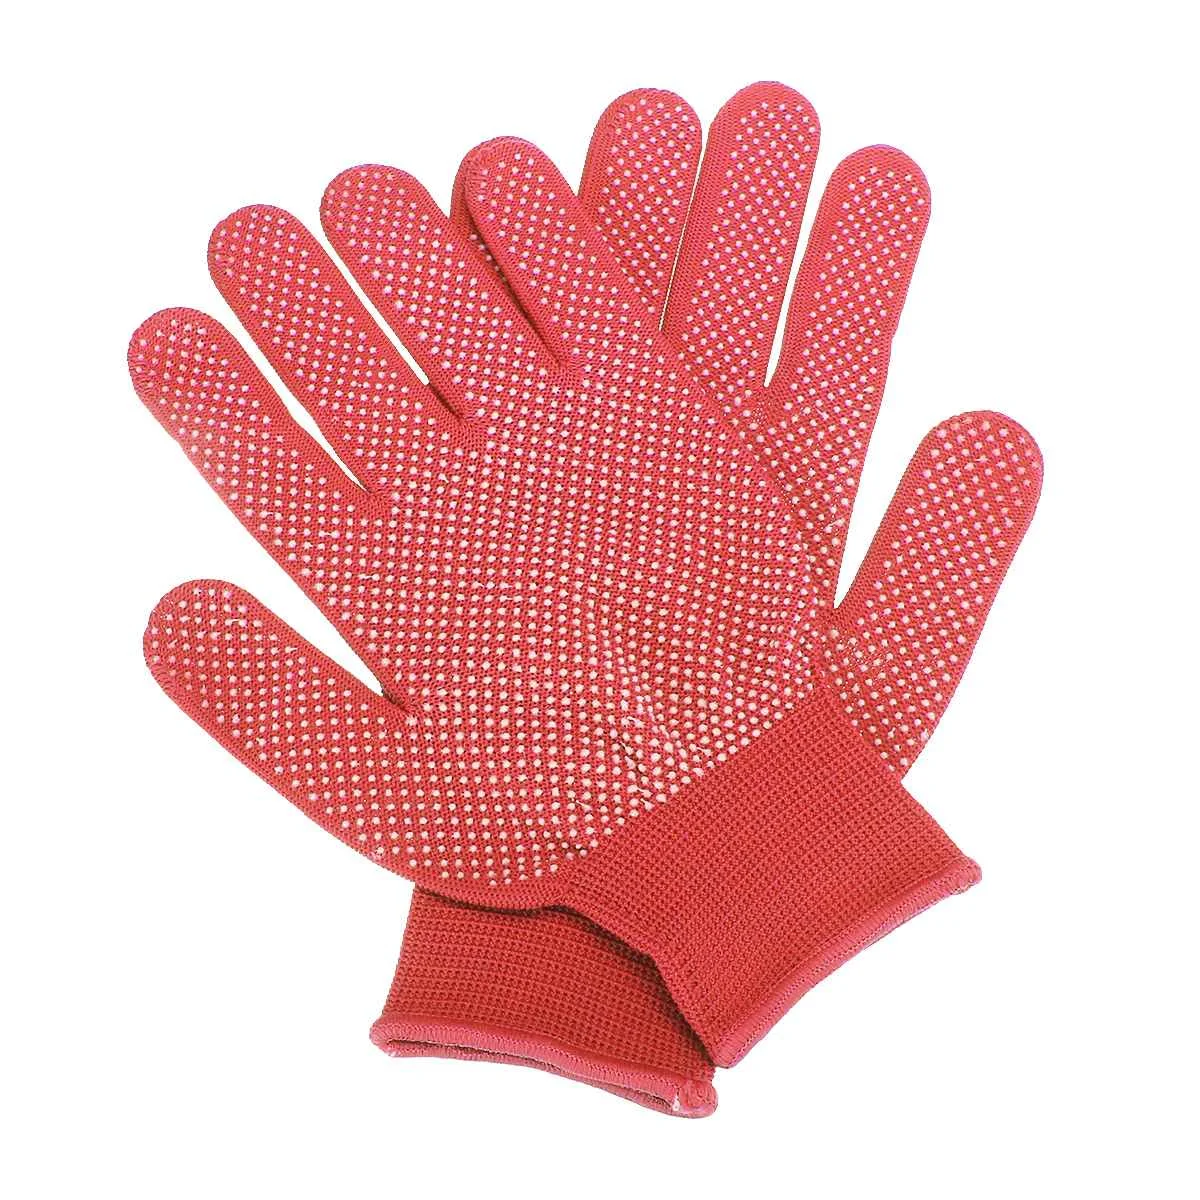 12 пар/24 шт домашние противоскользящие рабочие перчатки для мужчин и женщин, рабочие перчатки для безопасности сада, кухни, рабочие перчатки